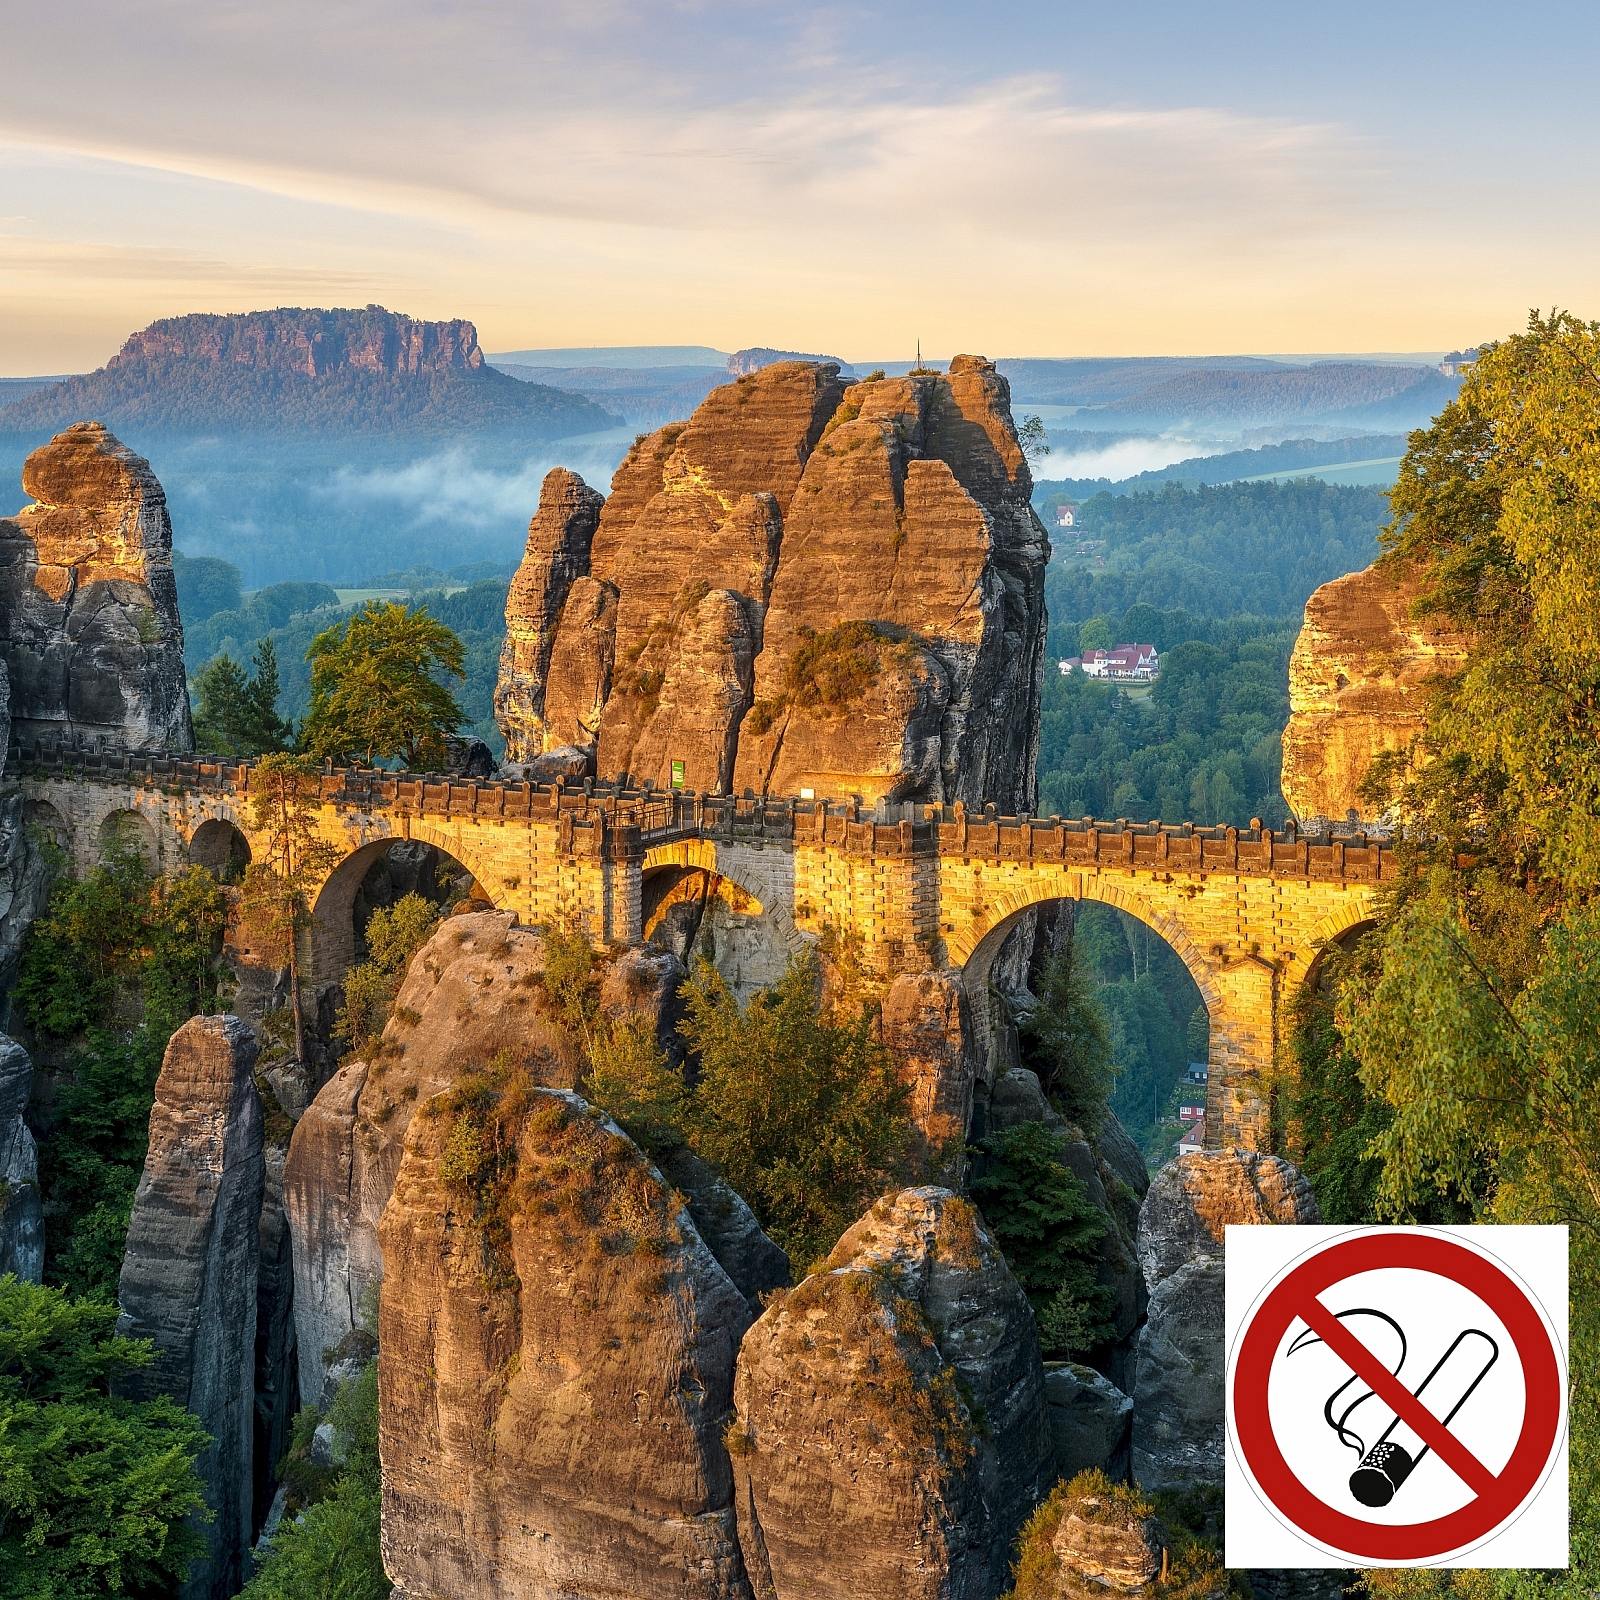 Rauchverbot im Basteigebiet